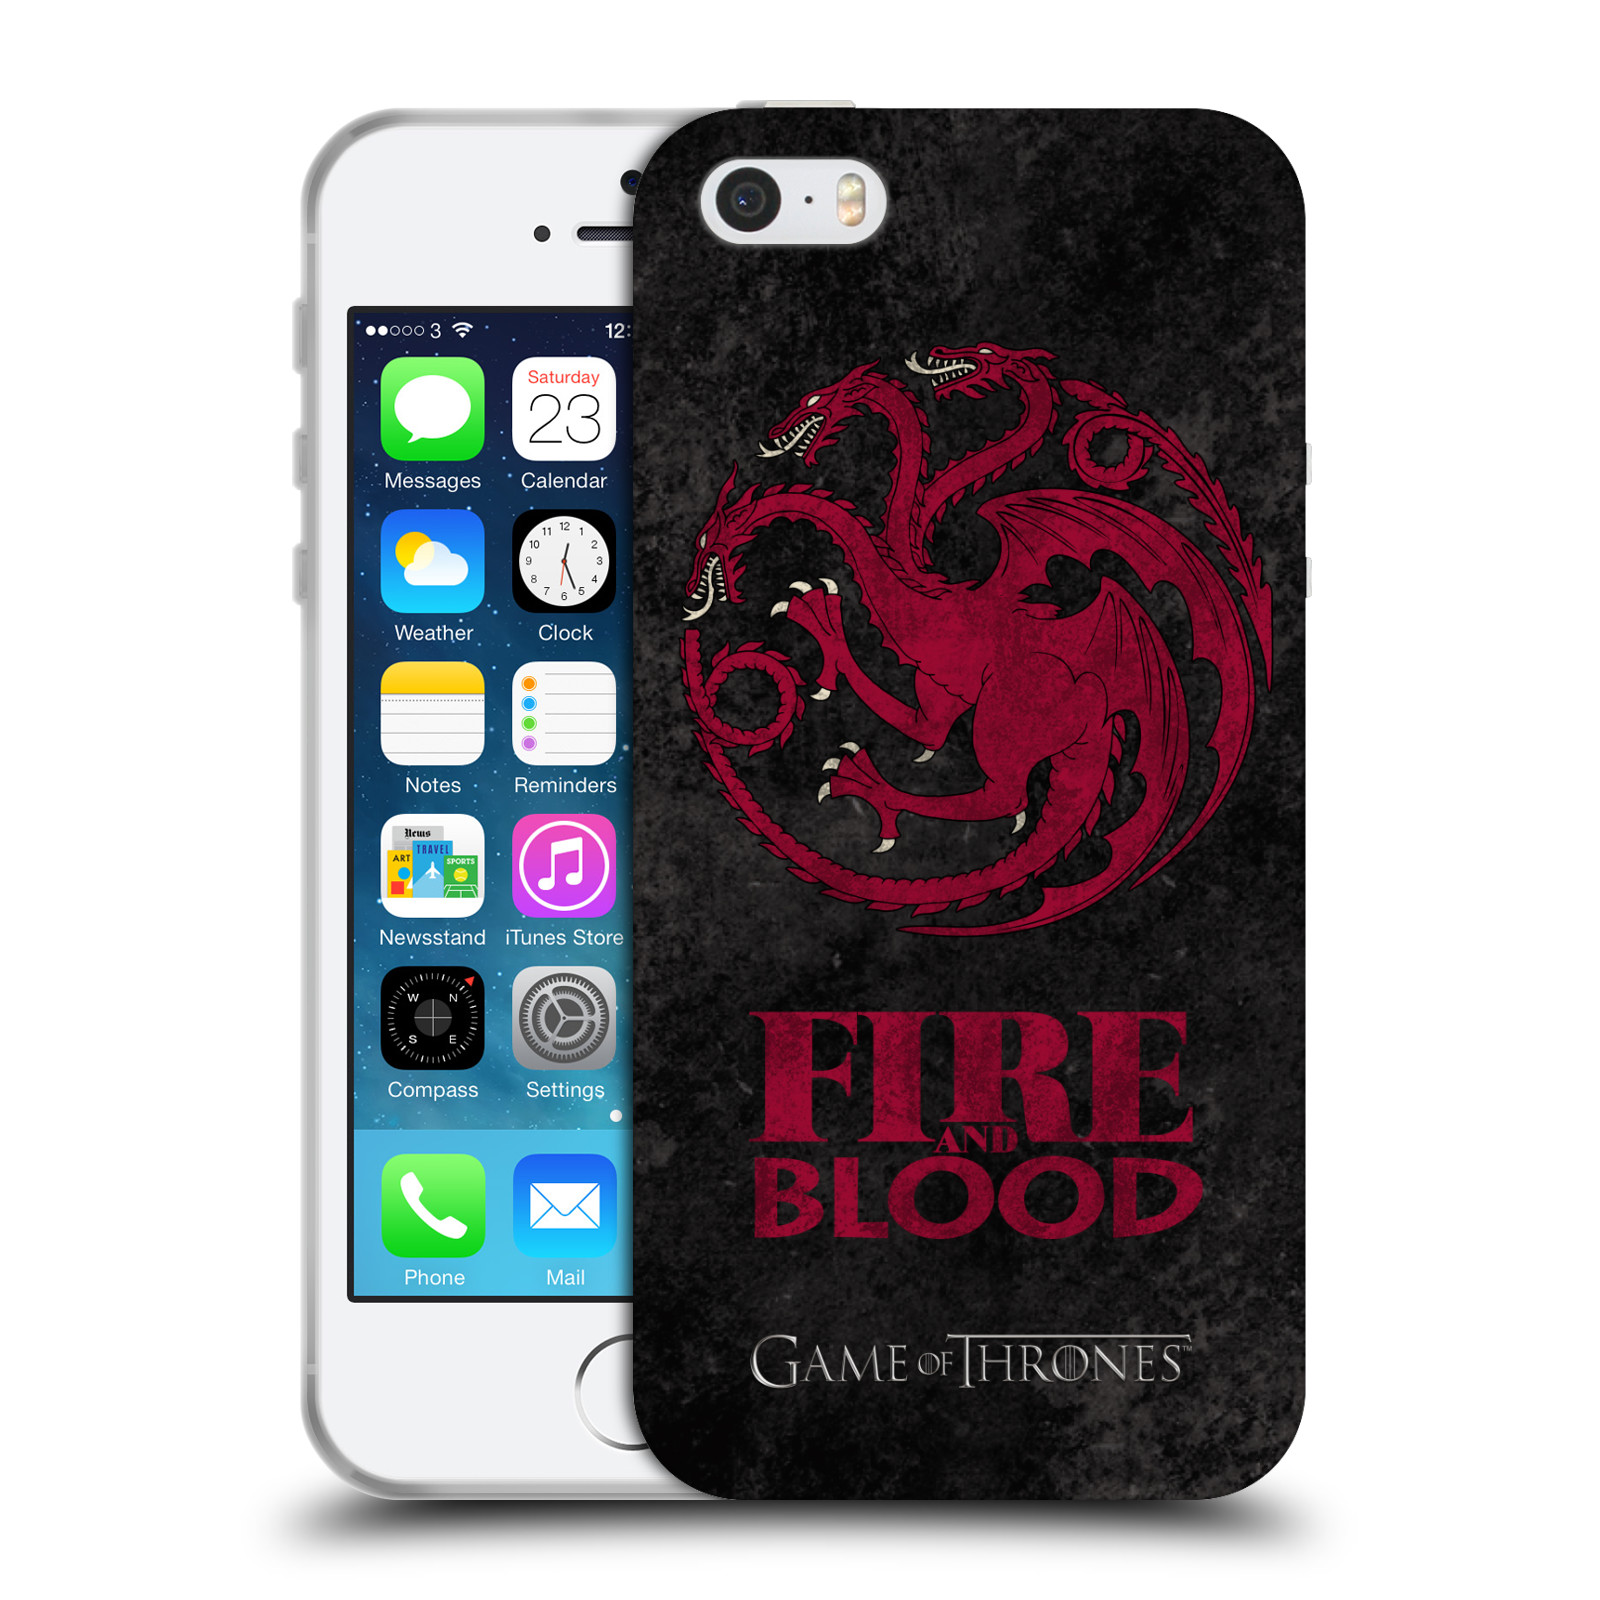 Silikonové pouzdro na mobil Apple iPhone 5, 5S, SE - Head Case - Hra o trůny - Sigils Targaryen - Fire and Blood (Silikonový kryt, obal, pouzdro na mobilní telefon Apple iPhone SE, 5S a 5 s motivem Hra o trůny - Sigils Targaryen - Fire and Blood)